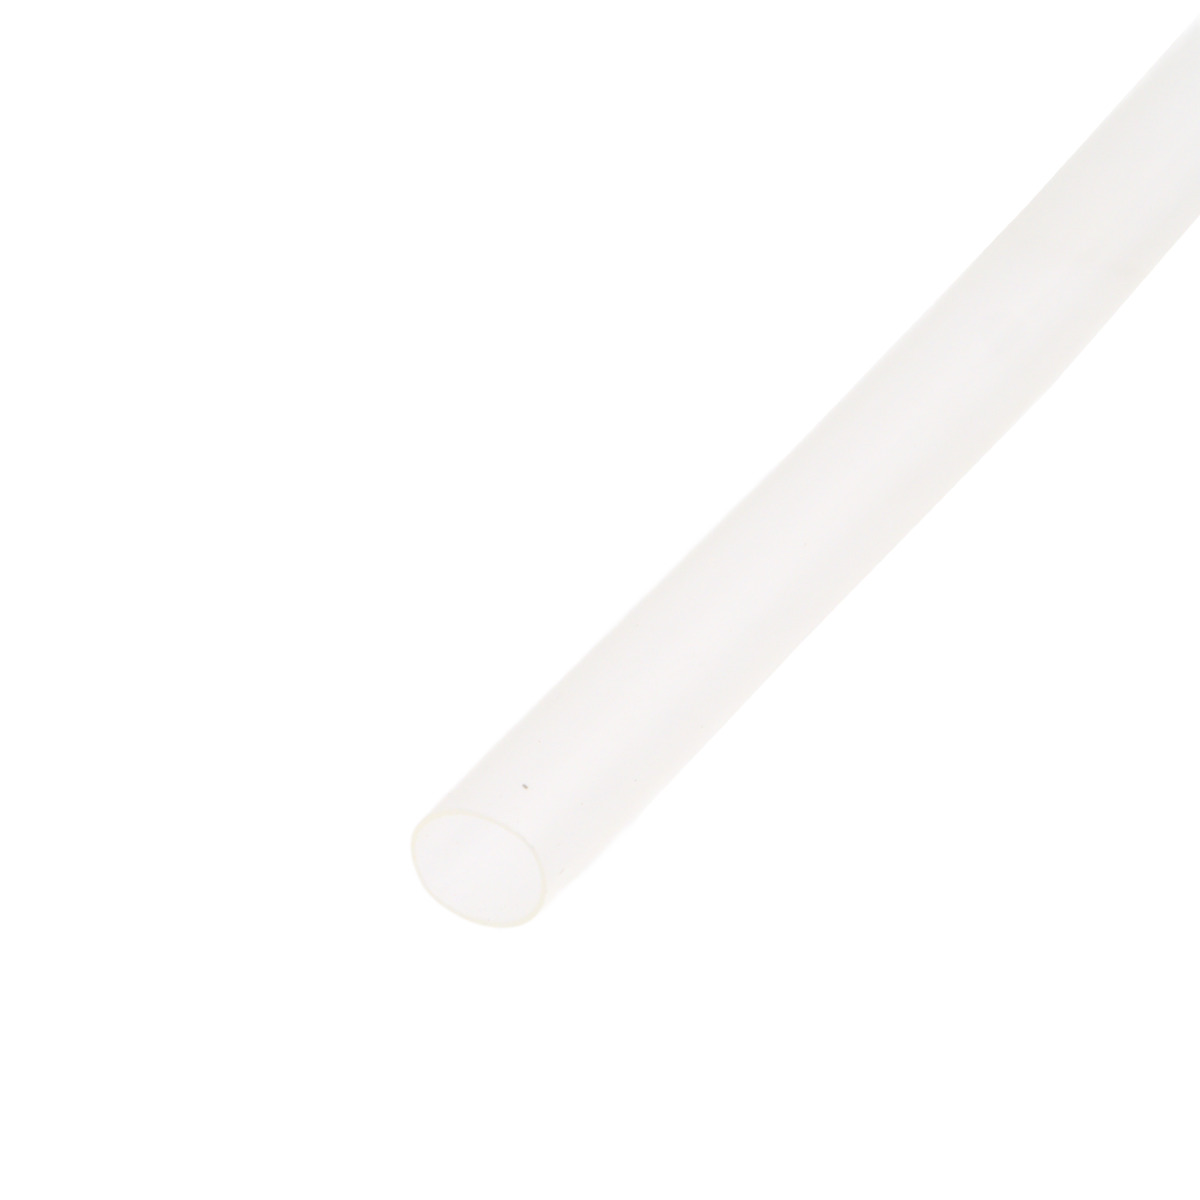 Pack de corte [1.2m] de tubo termorretráctil 2:1 Ø2.4mm transparente – Poliolefina libre de halógeno [x25]